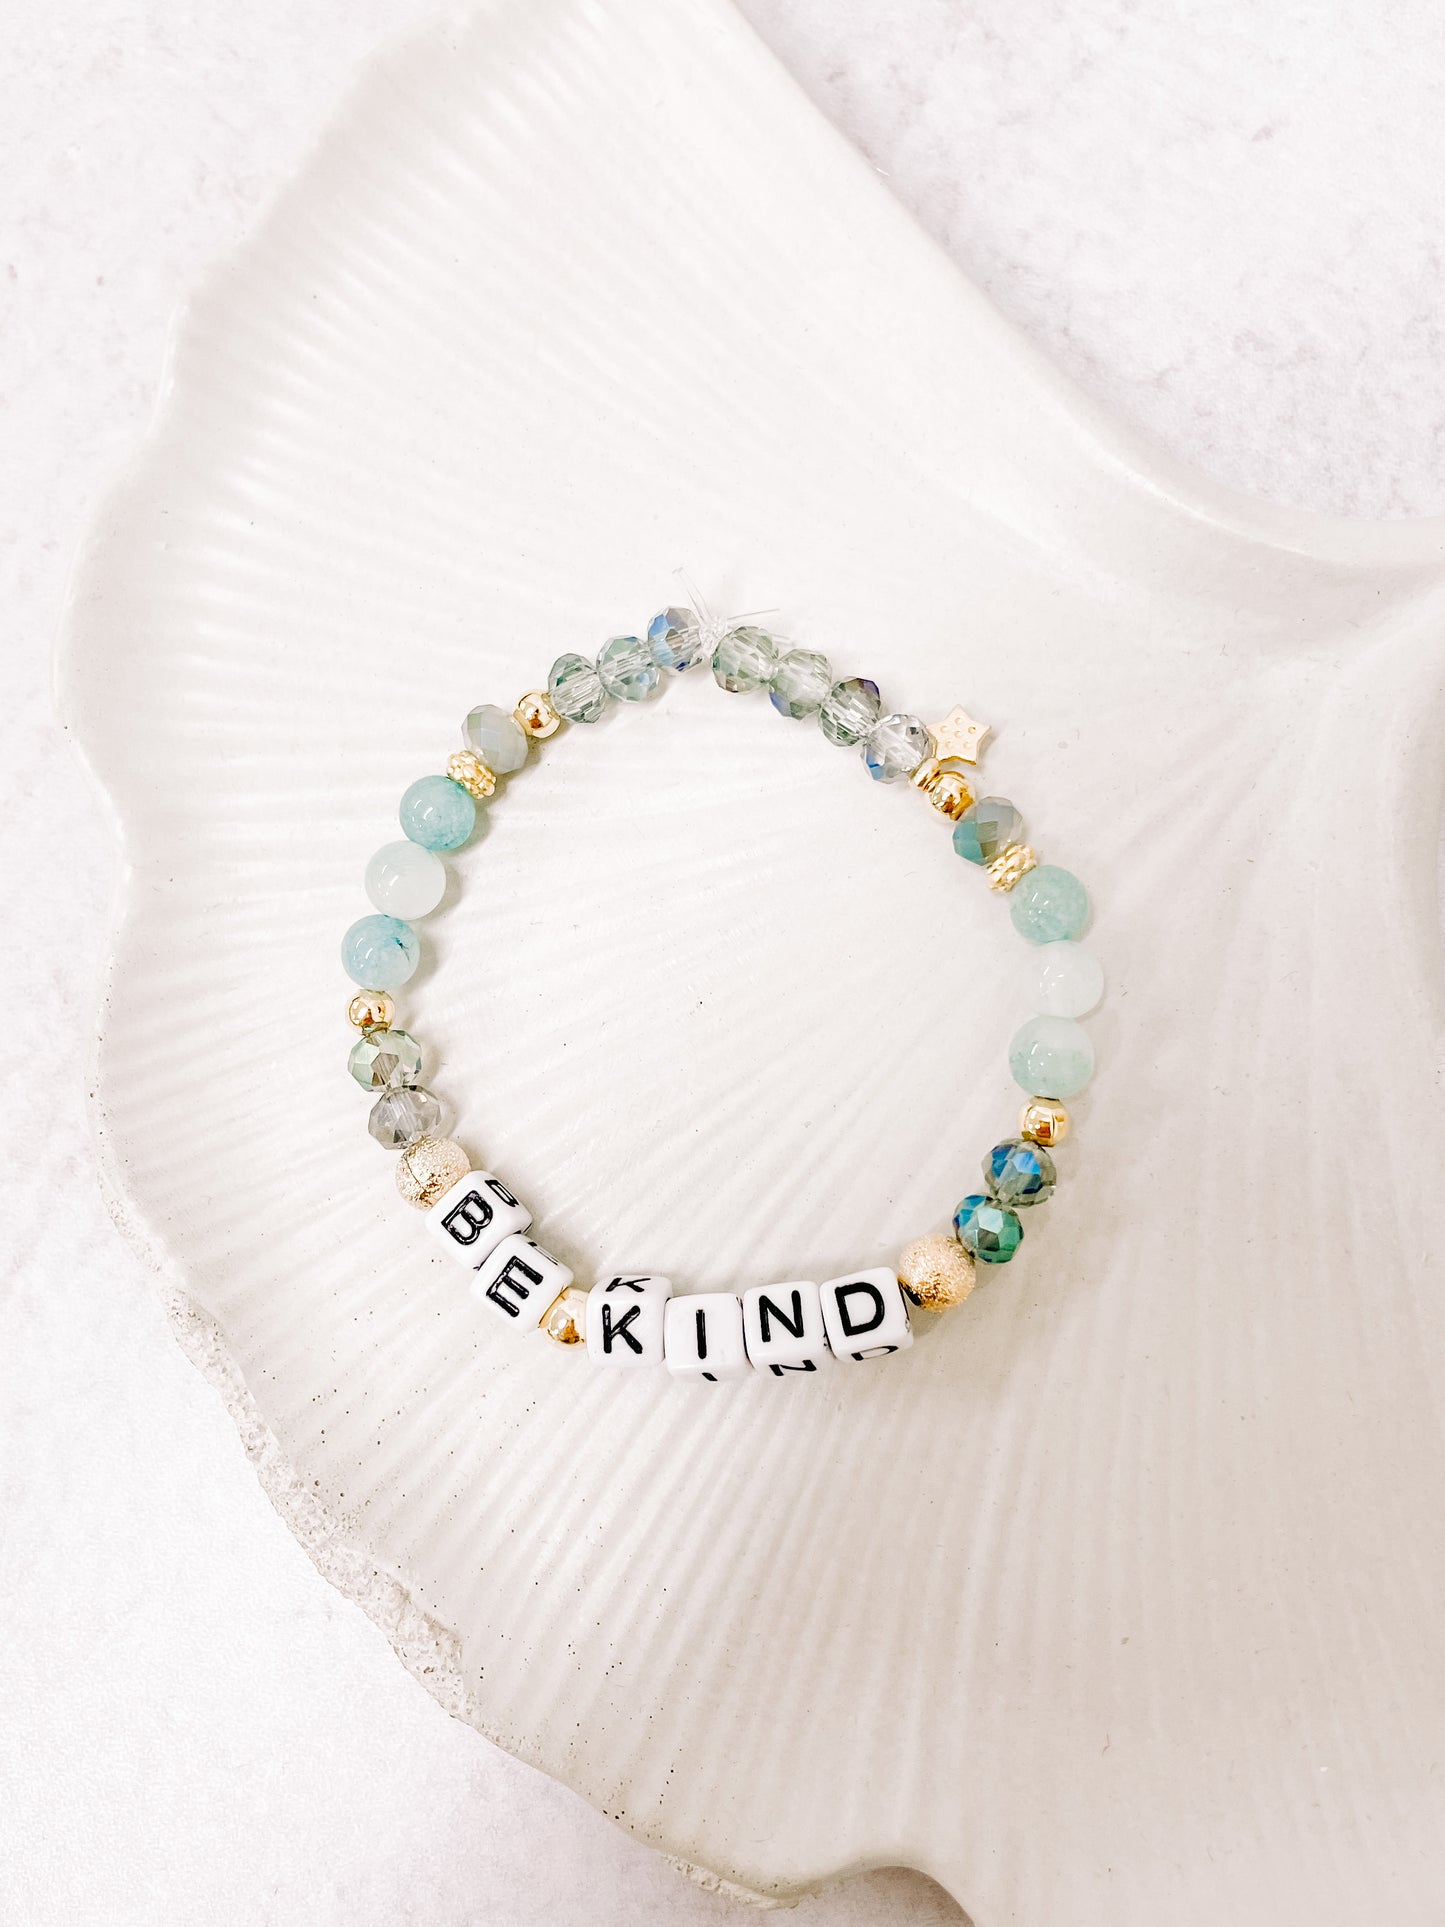 Be kind affirmation bracelet